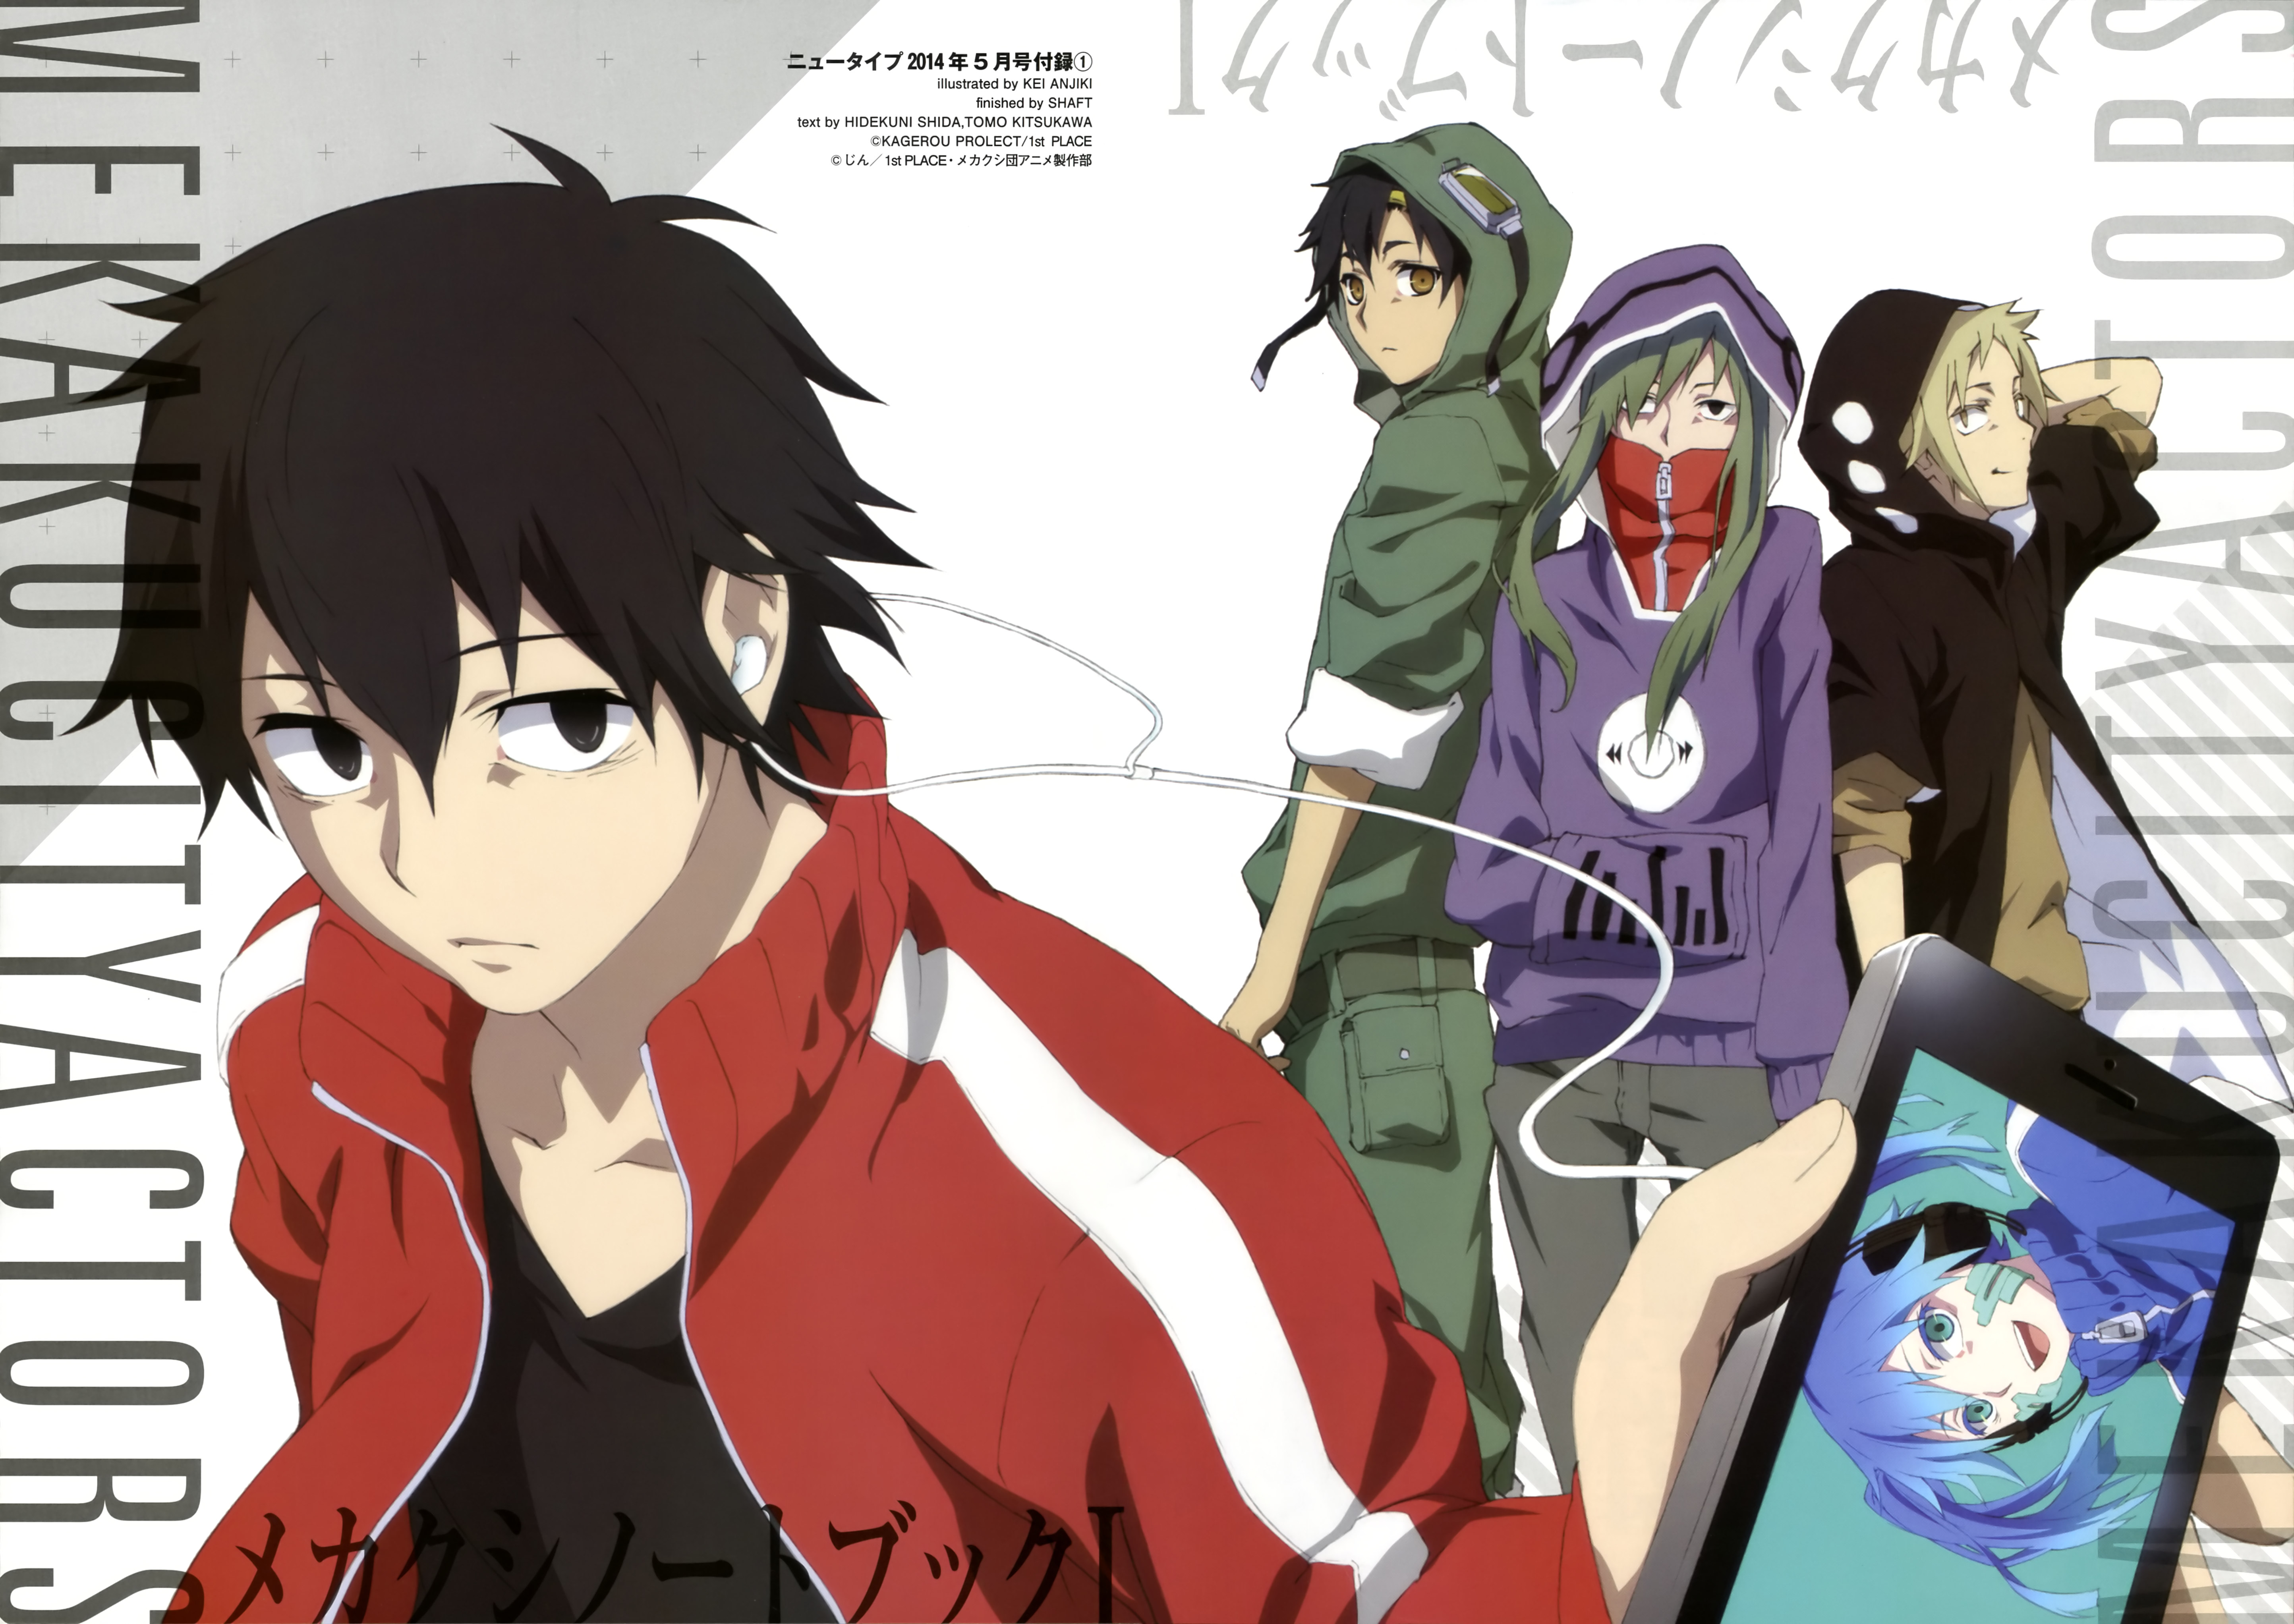 Mekakucity Actors  Anime, Kagerou project, Anime characters